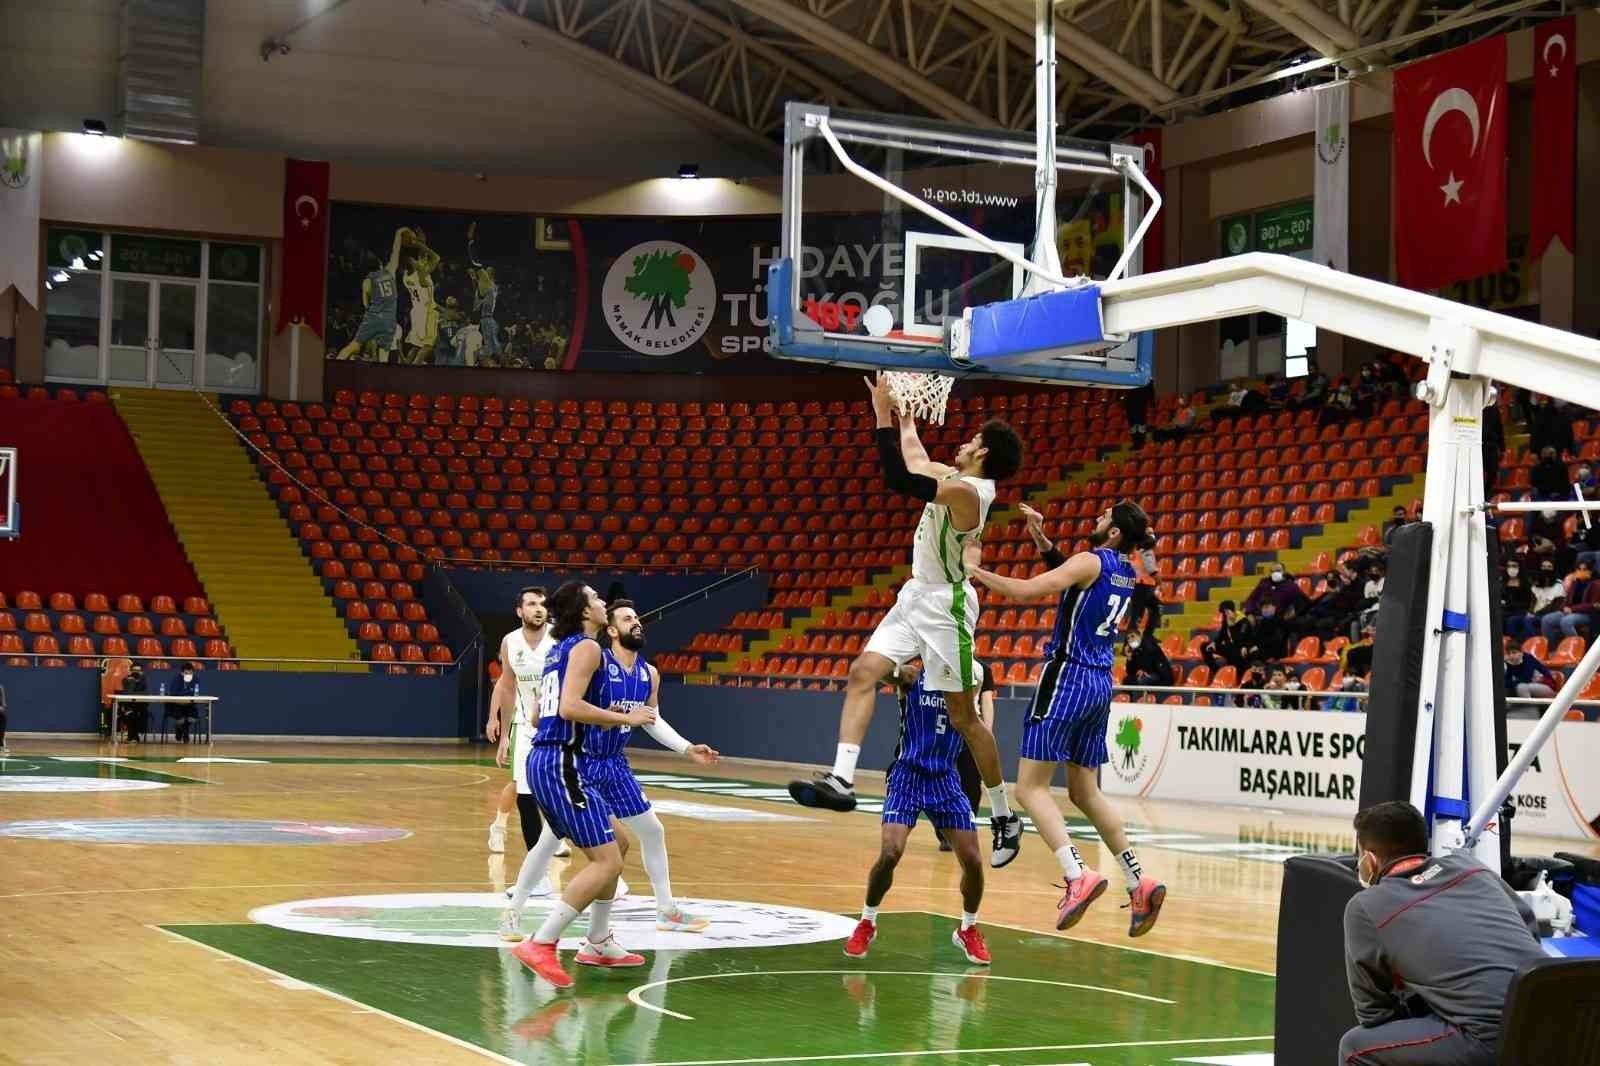 Mamak Belediyesi Basketbol Takımı evinde rahat kazandı #ankara